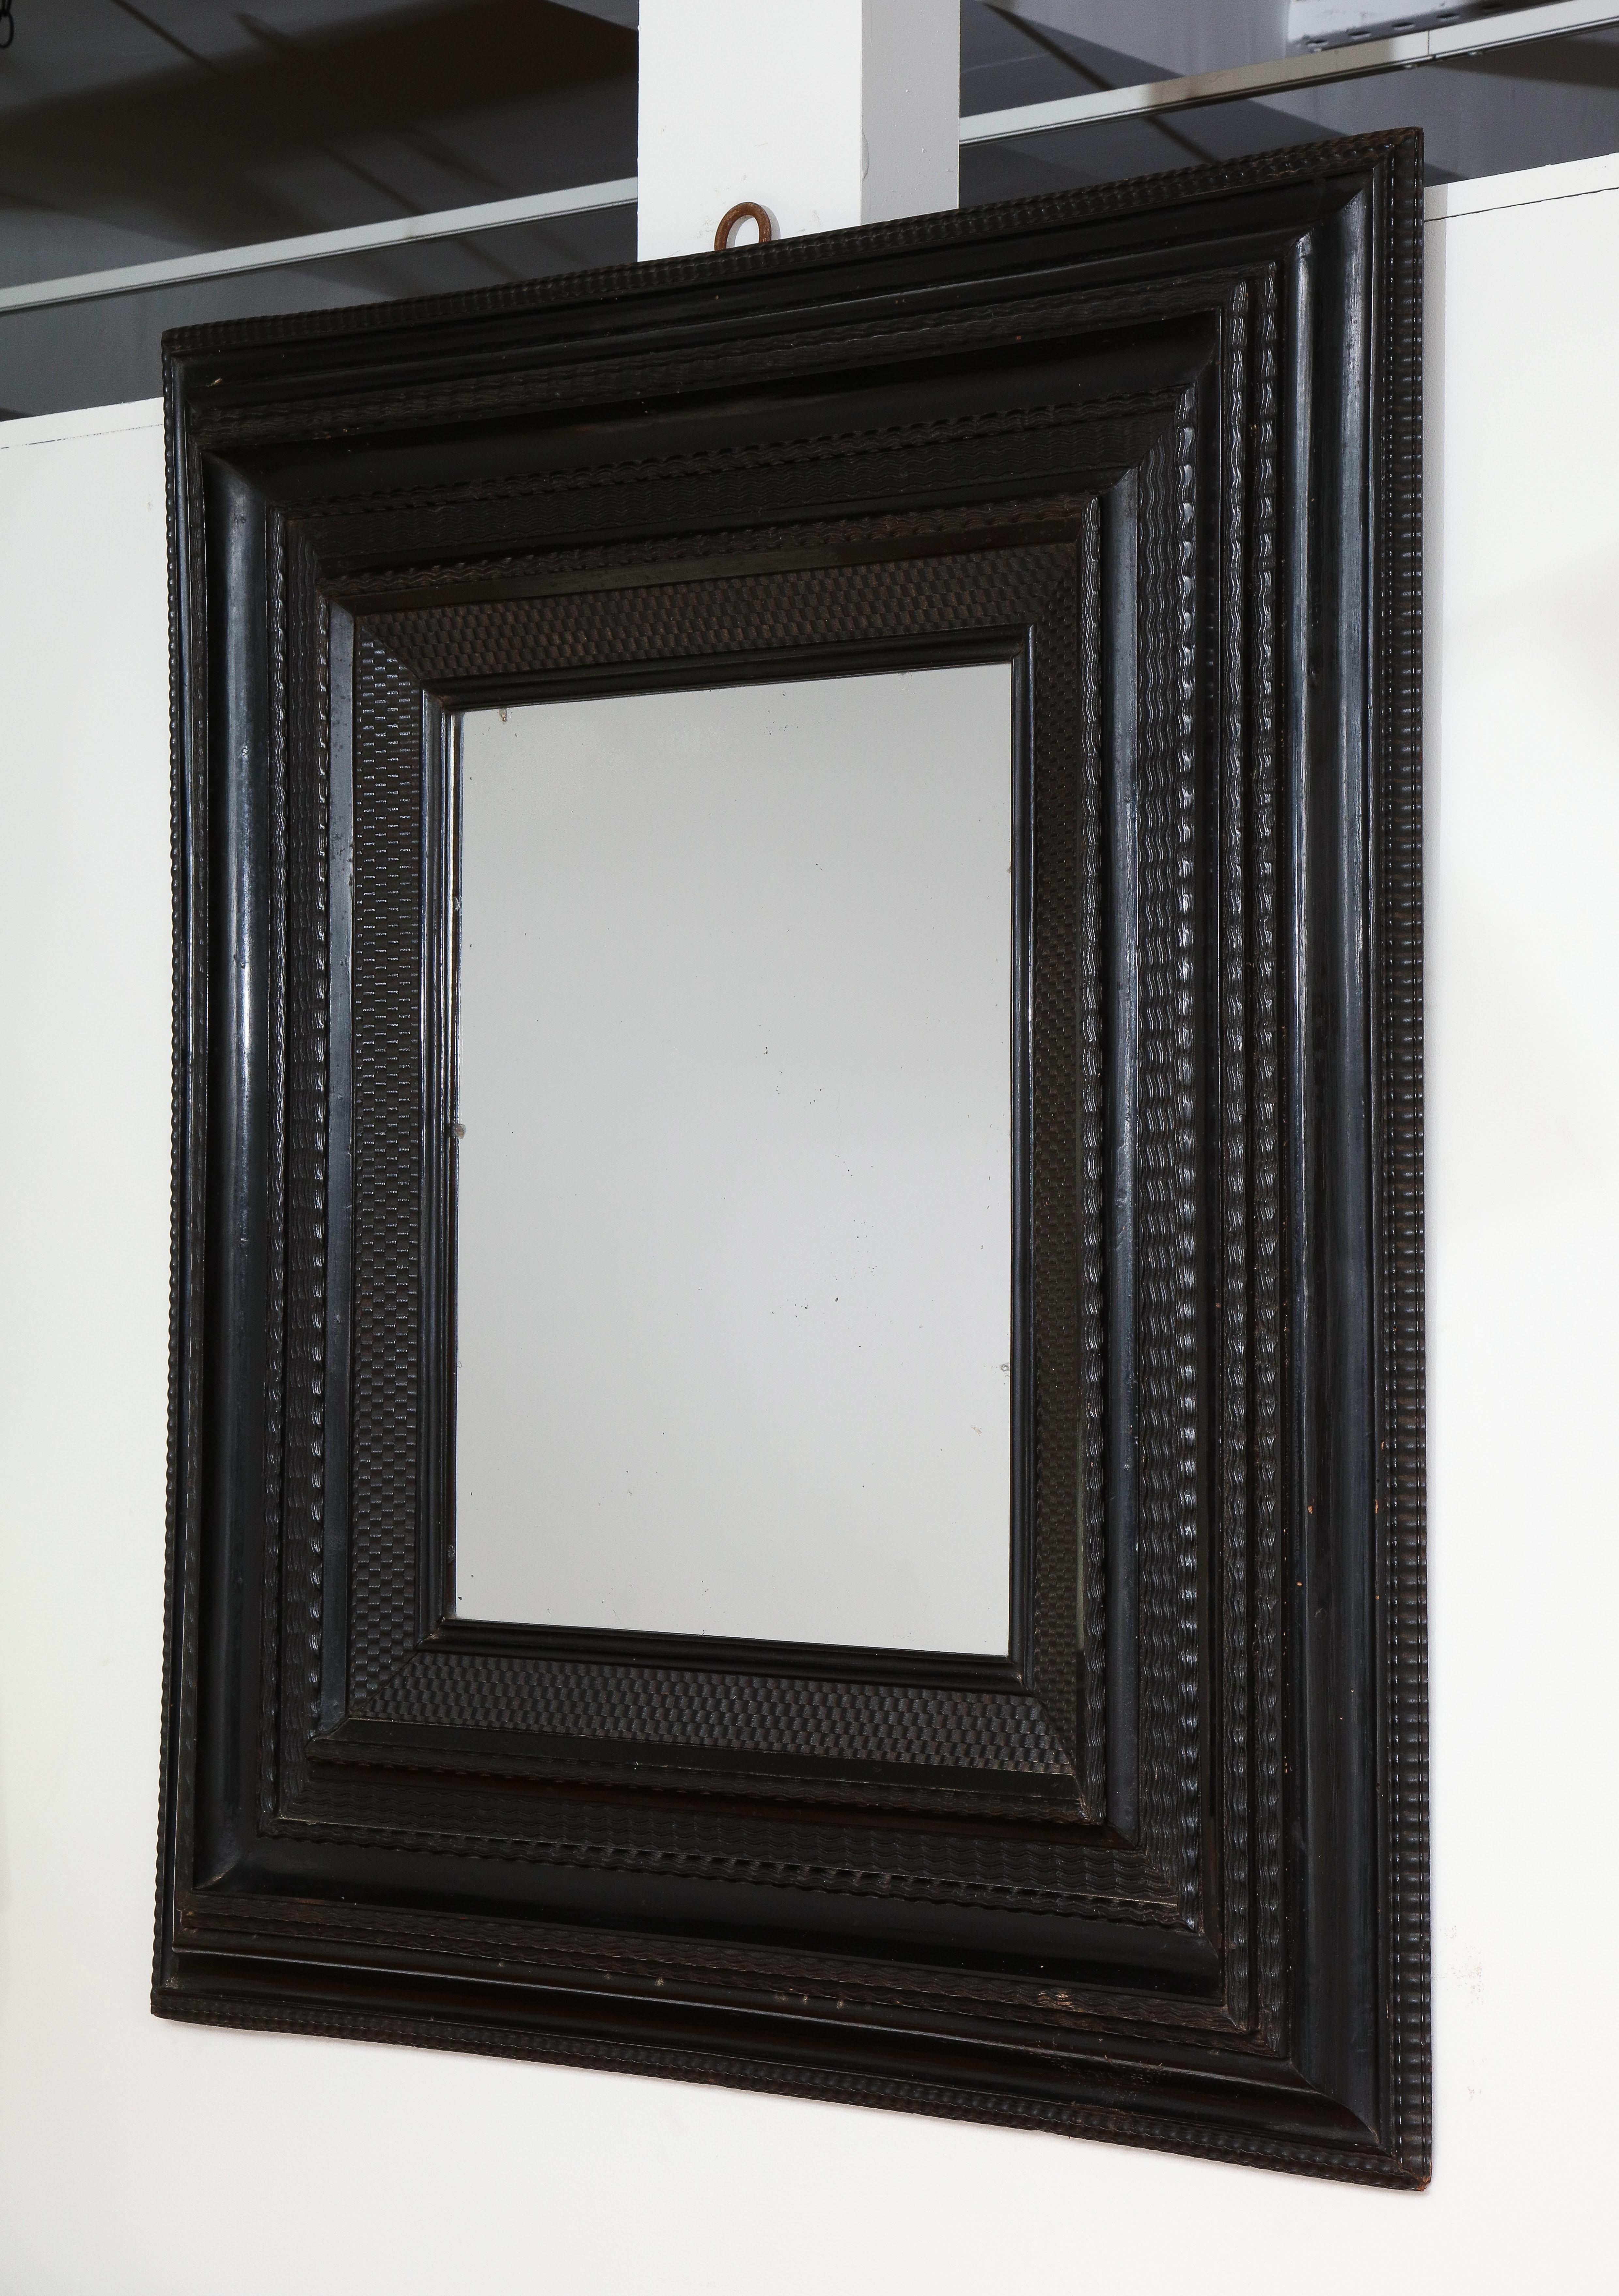 Fin du 18e C., début du 19e C. Miroir italien
Cadre guilloché en noyer ébonisé, miroir ancien en verre argenté

Mesures : 47 x 41,75 pouces.